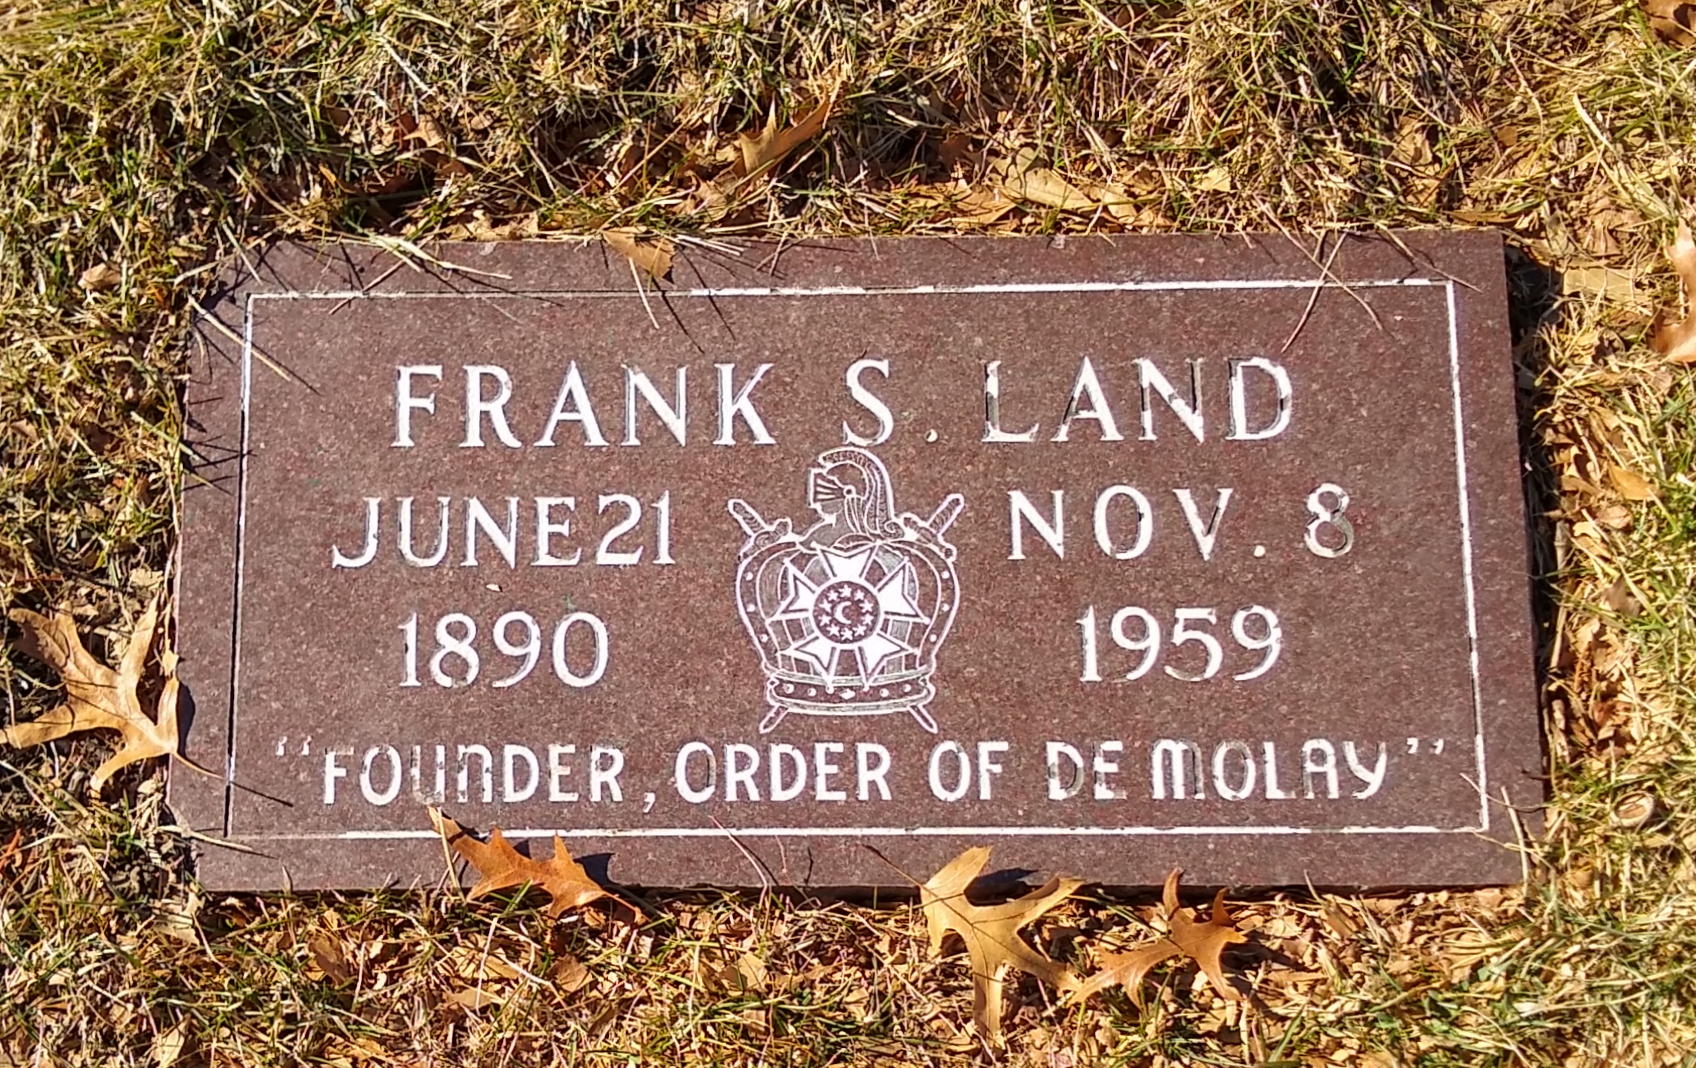 Freemasons - Frank S. Land “Dad”, 33° Freemason 1890 